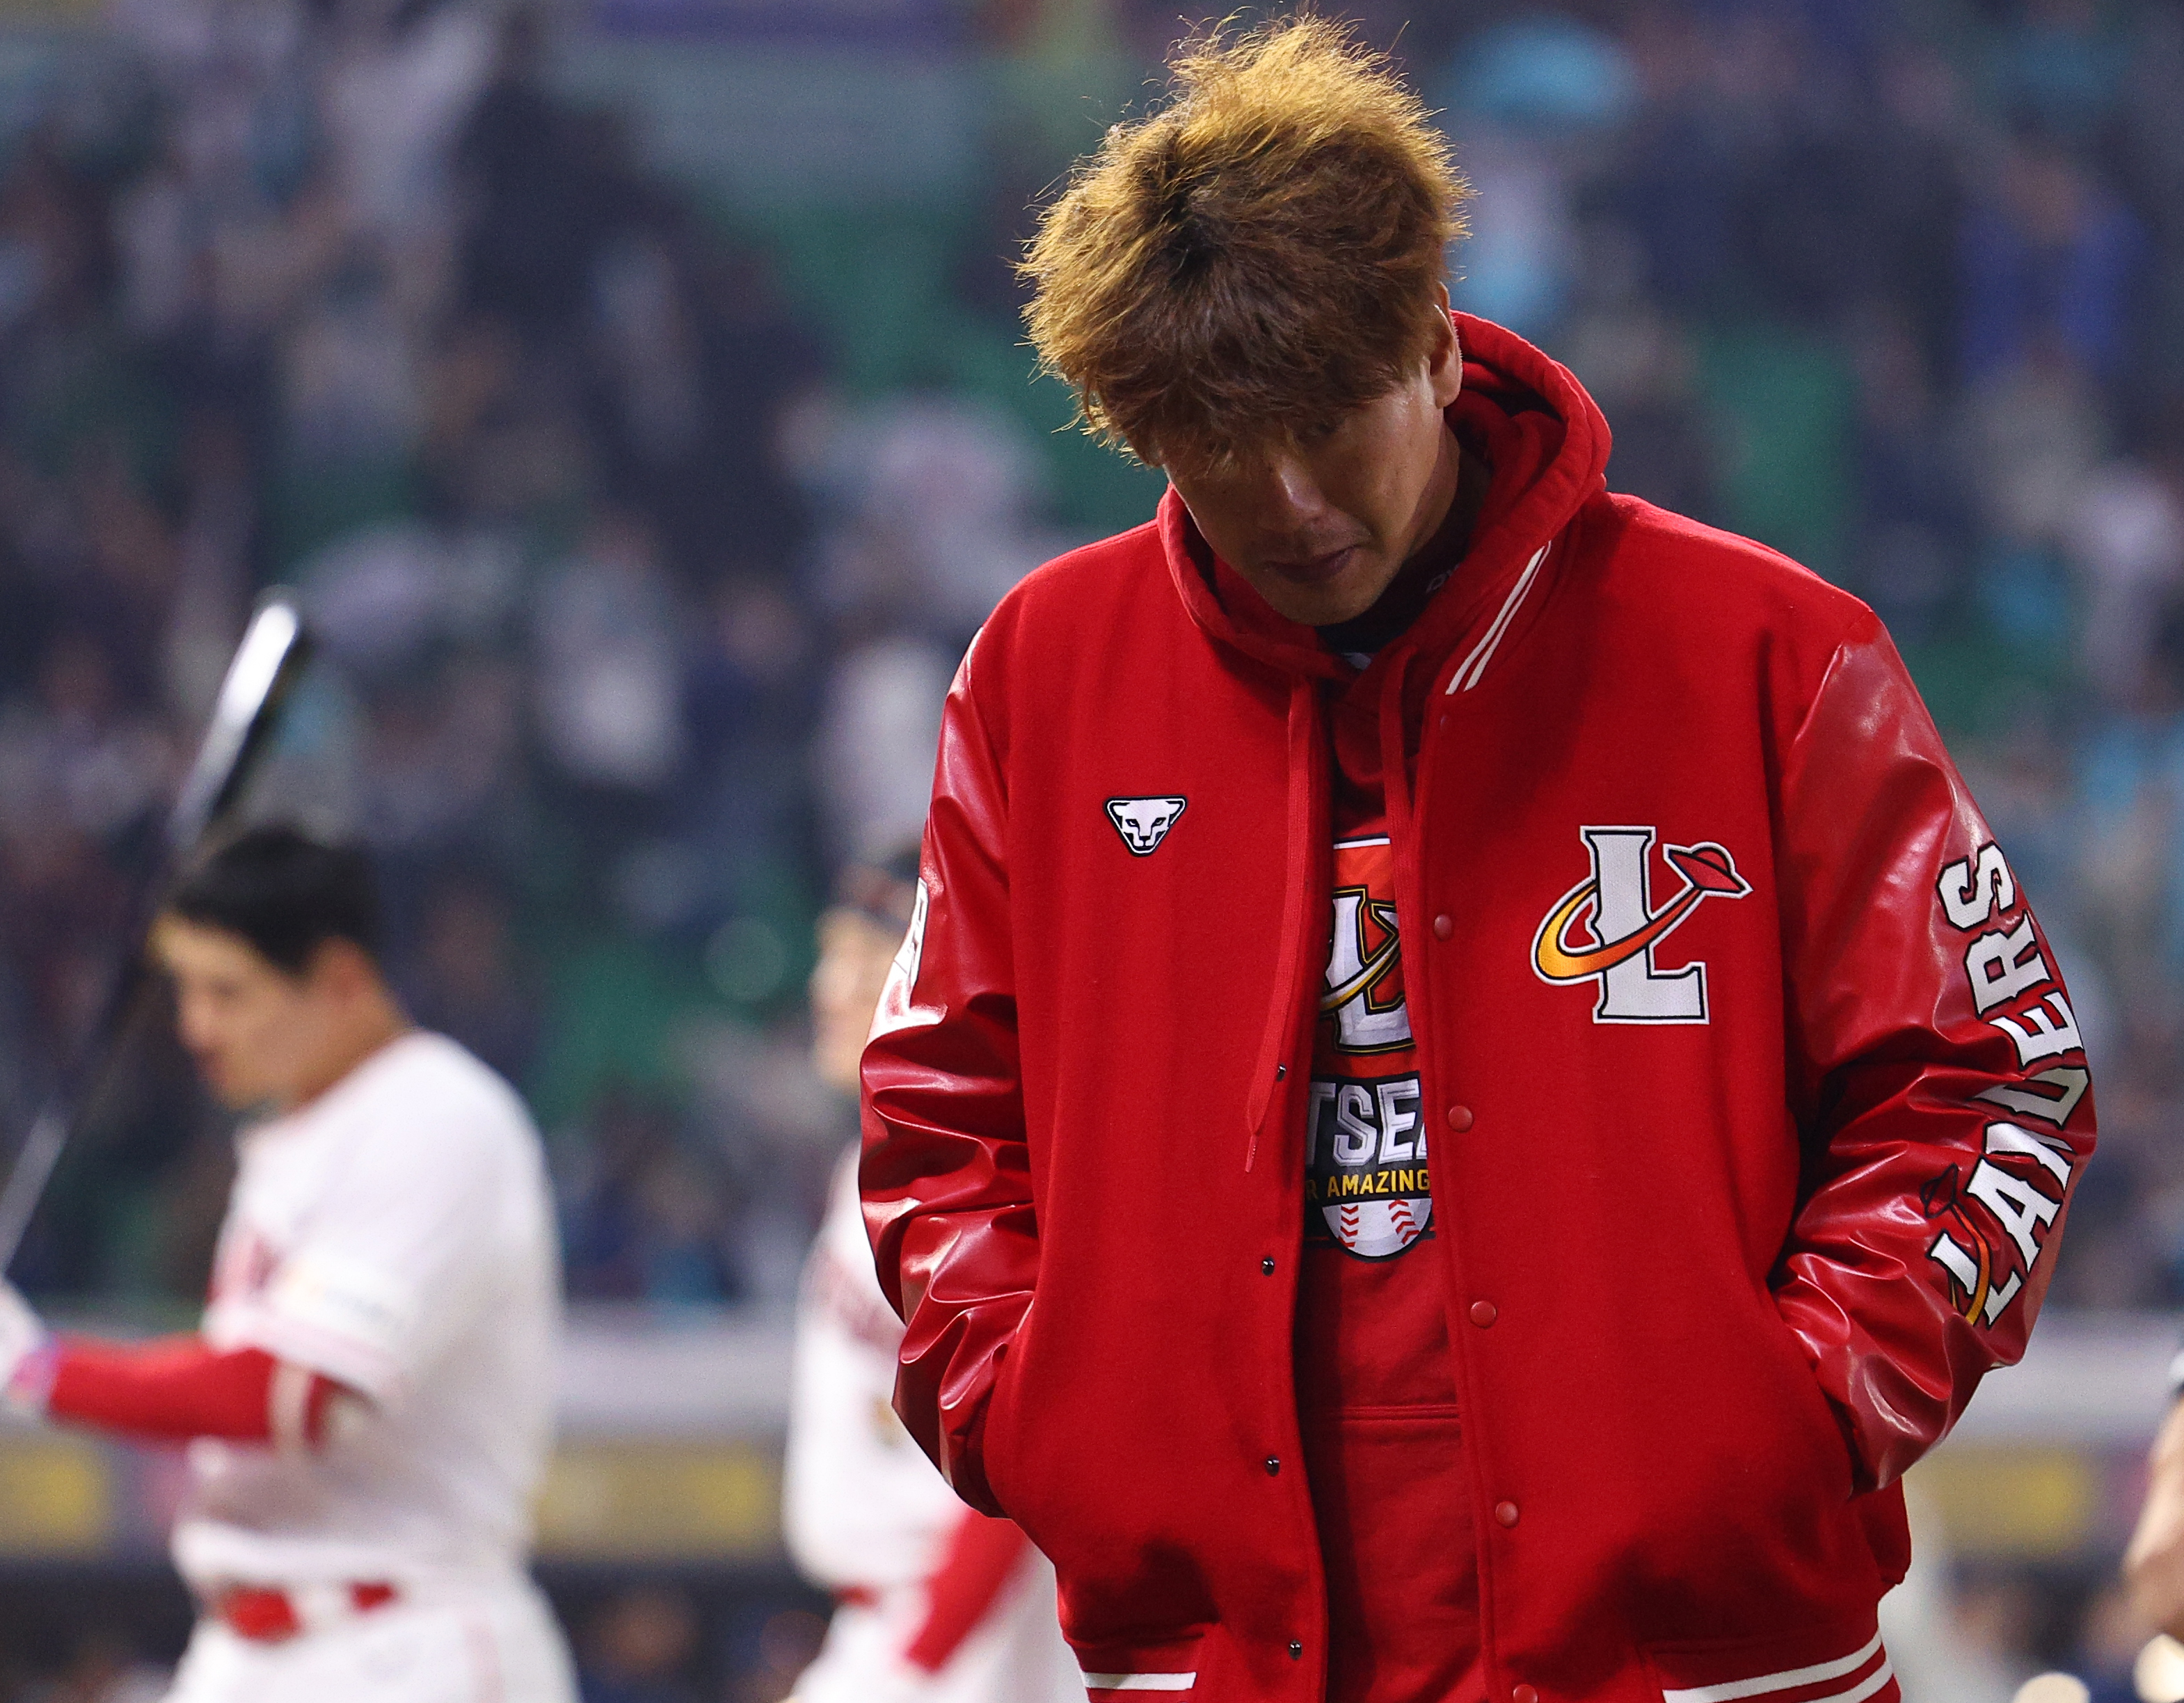 2차전에서 패전투수가 된 SSG 김광현이 고개를 푹 숙인 채 경기장을 나서고 있다.